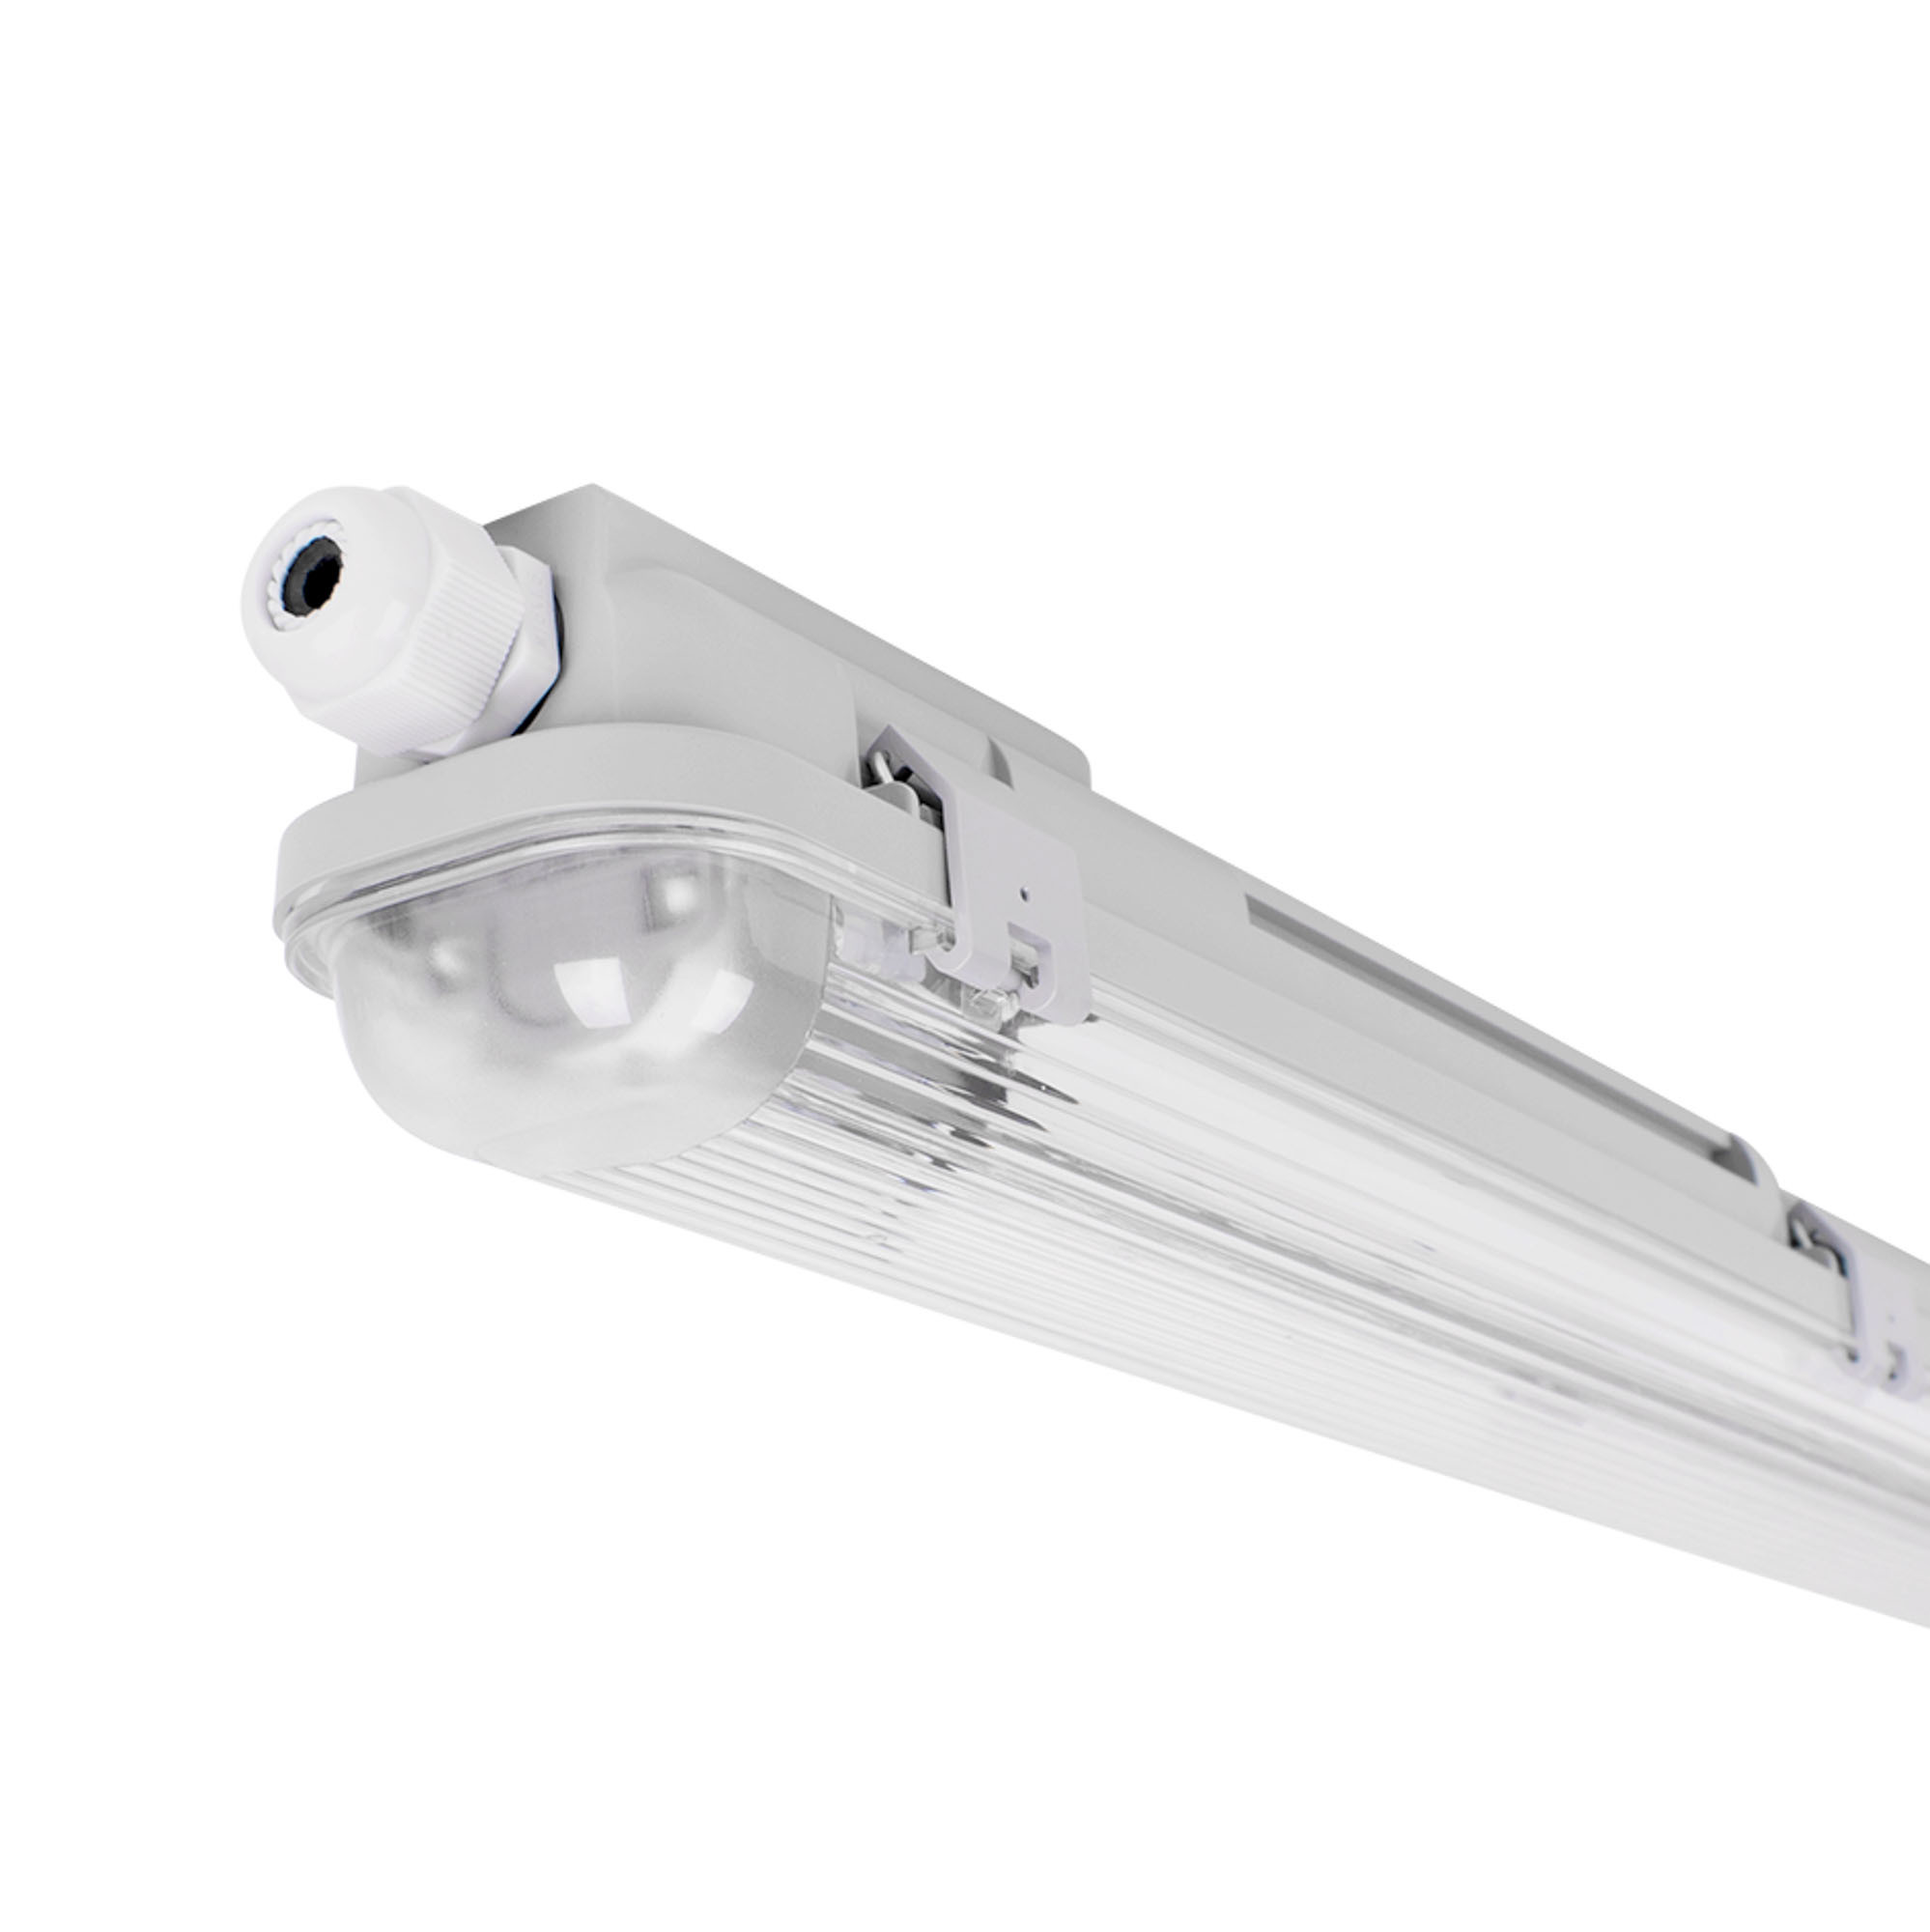 Anten Neon LED 150CM (1 pc) | 45W 4950lm Connectable Tube LED | Blanc  Froid(6000K) Reglette LED IP65 Imperméable Luminaire Plafonnier pour Garage